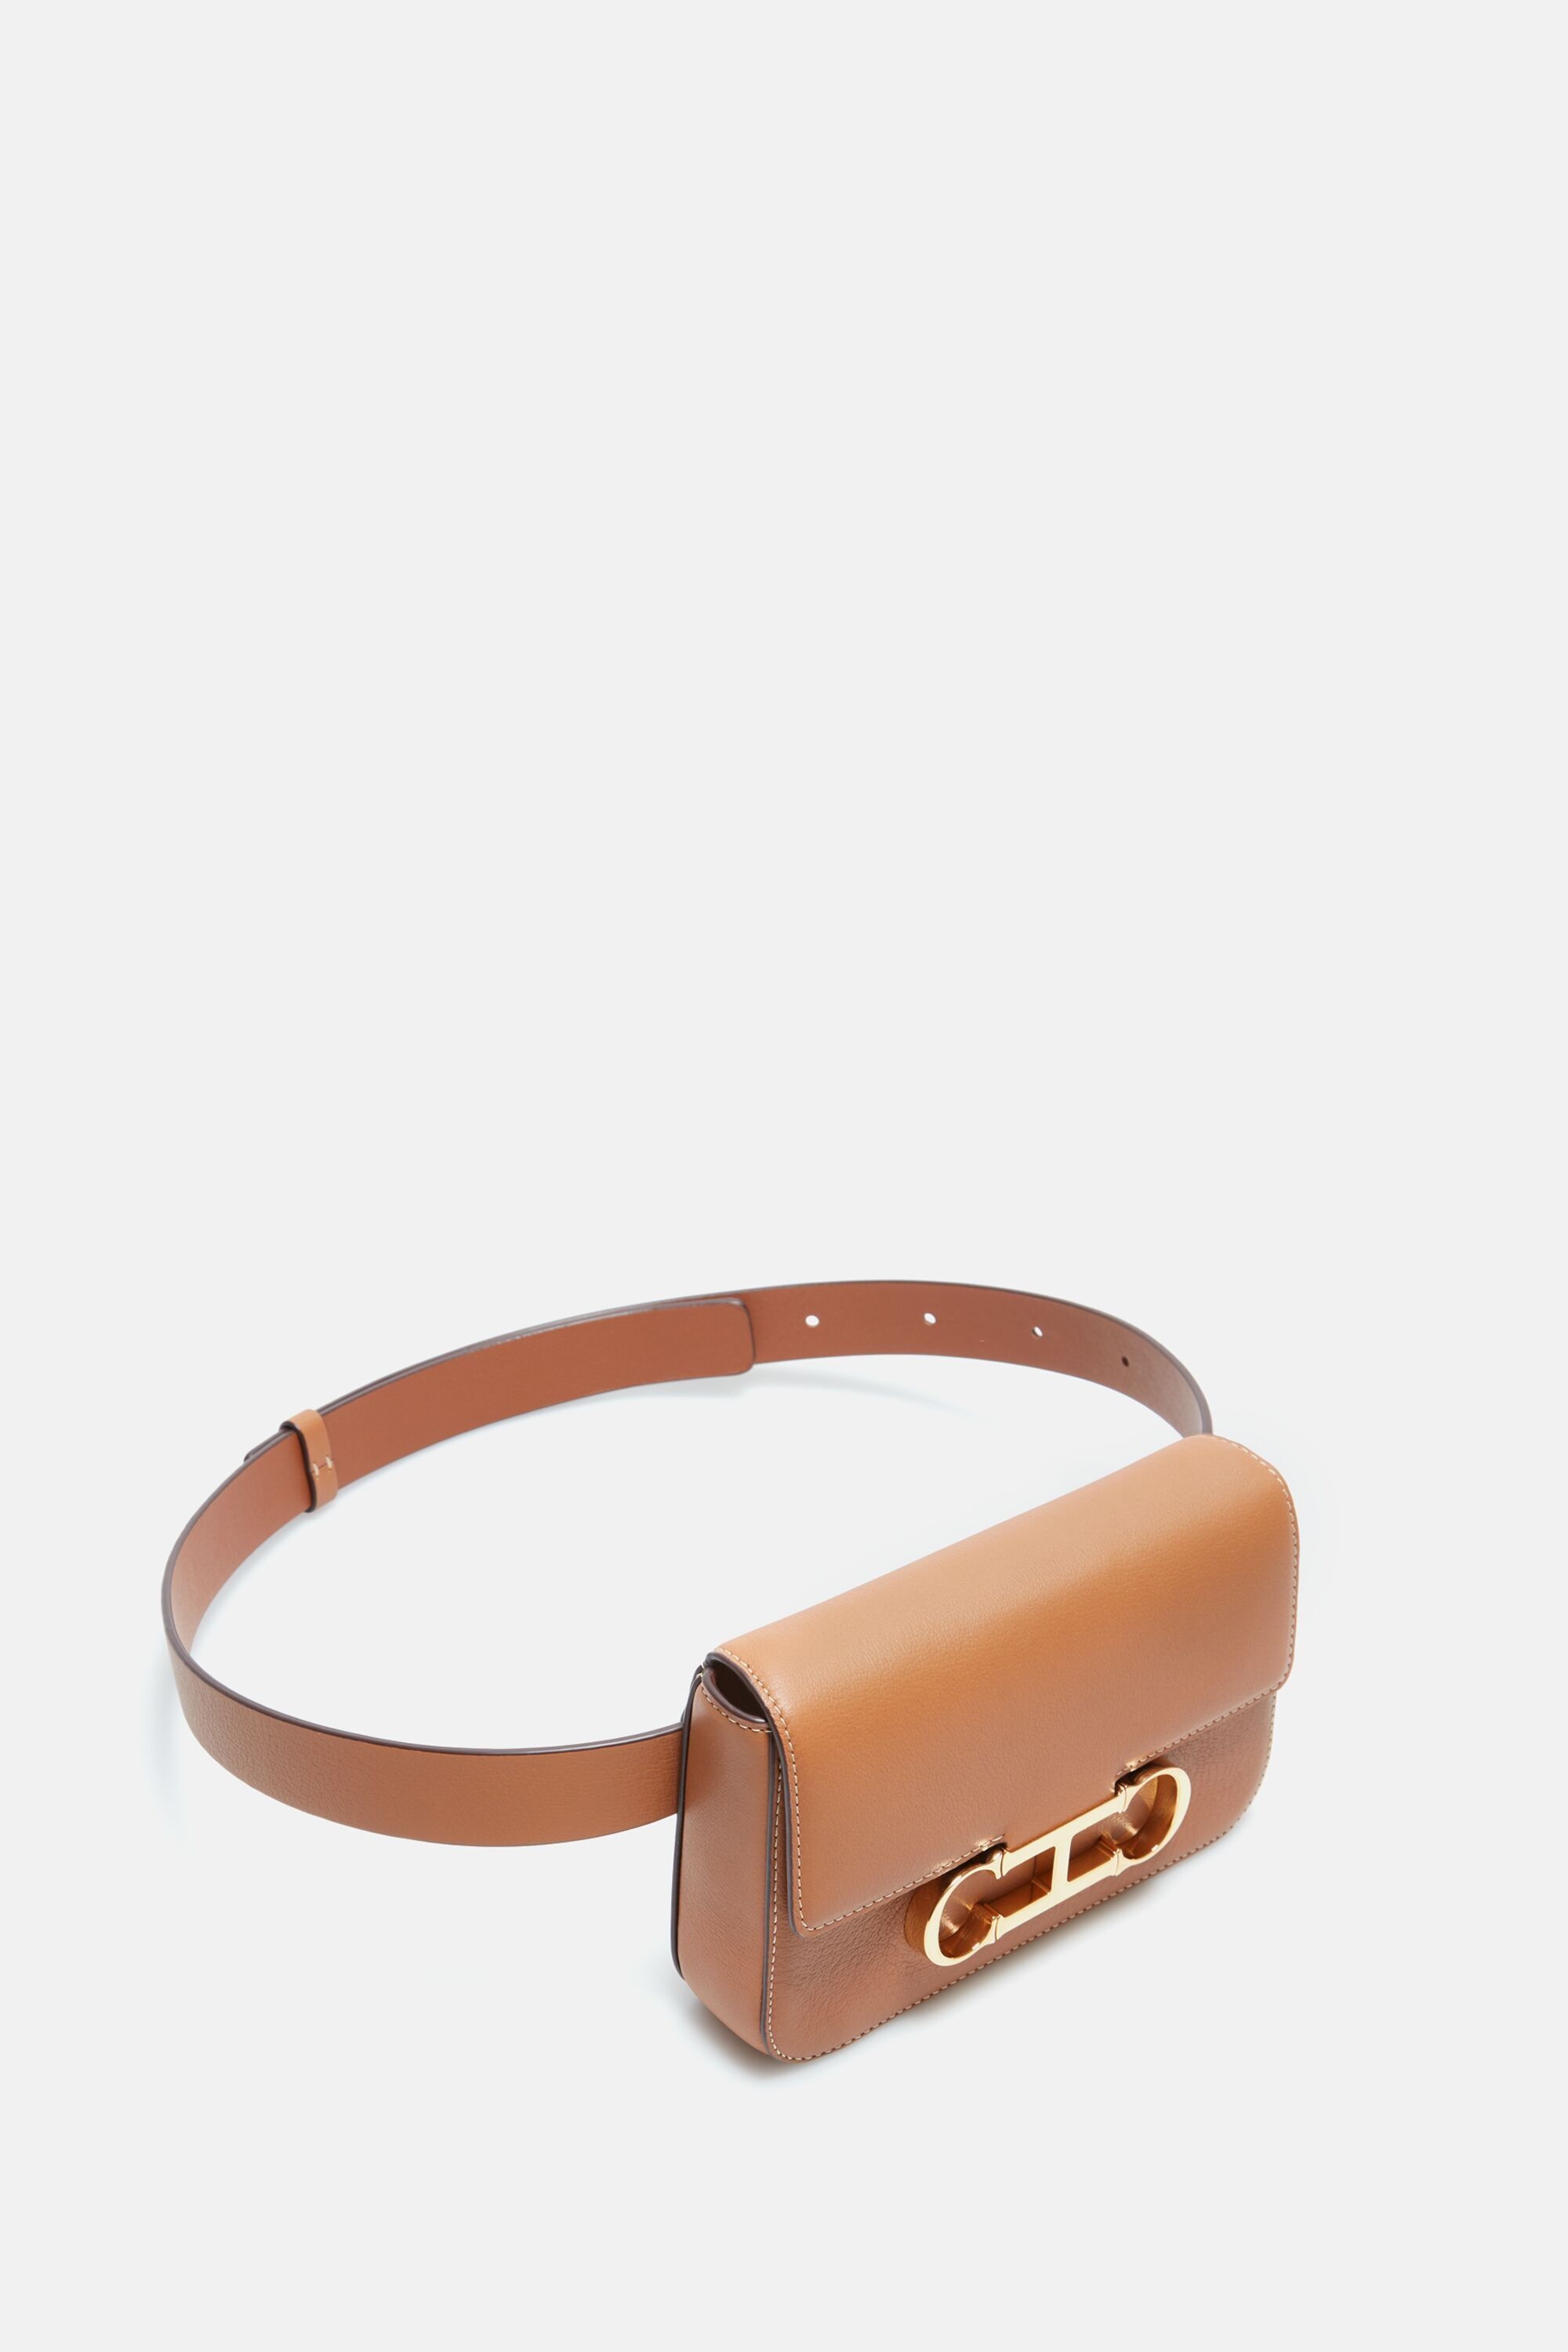 Initials Insignia | Small belt bag